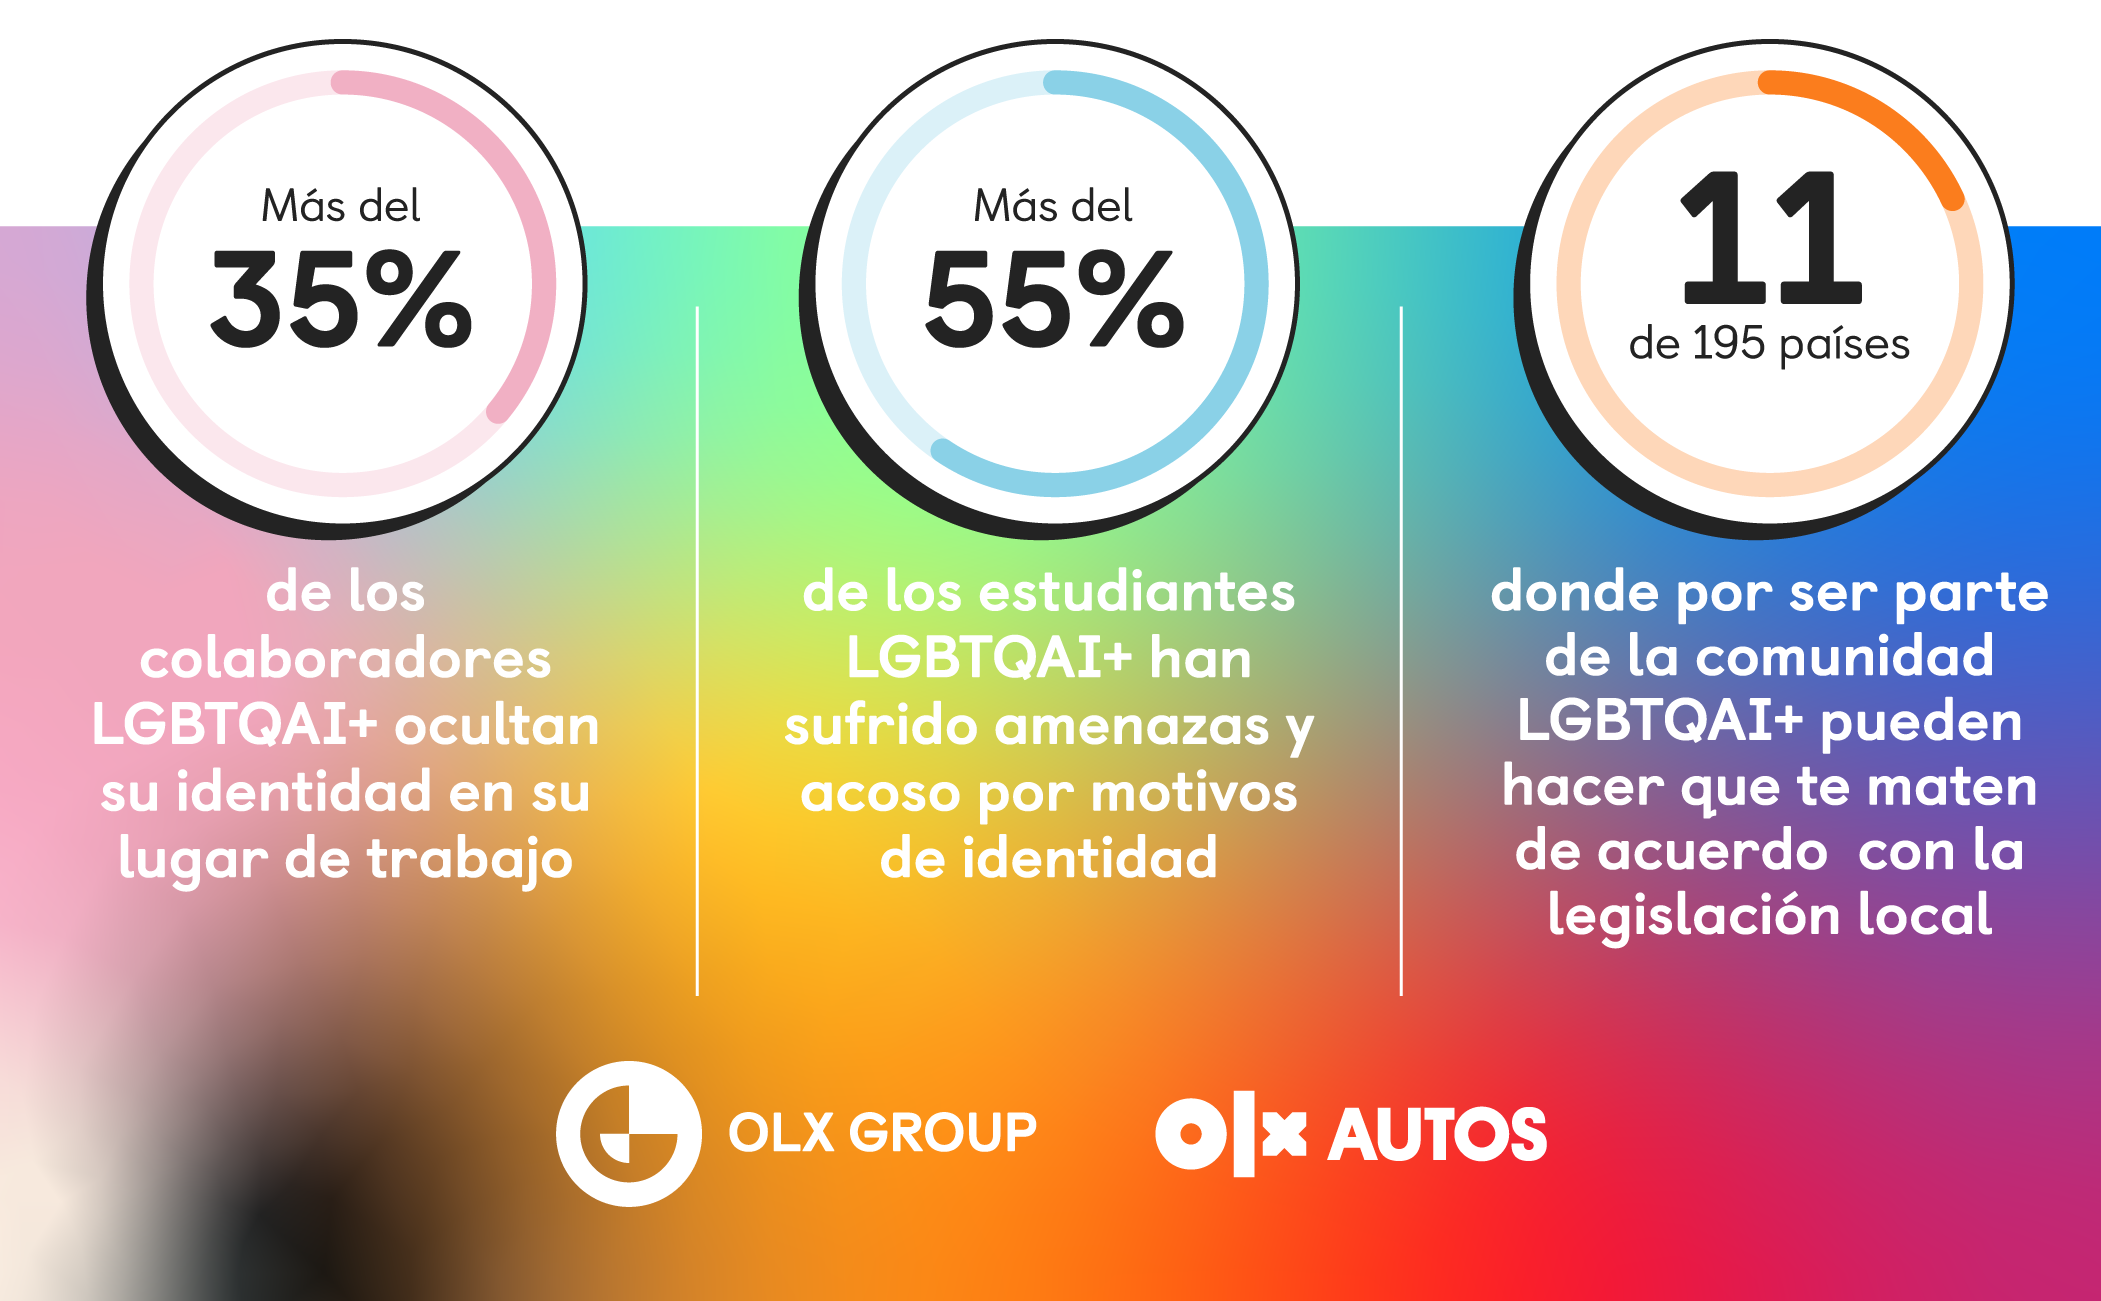 OLX autos se suma a la promoción de una cultura corporativa incluyente de la comunidad LGBTQAI+